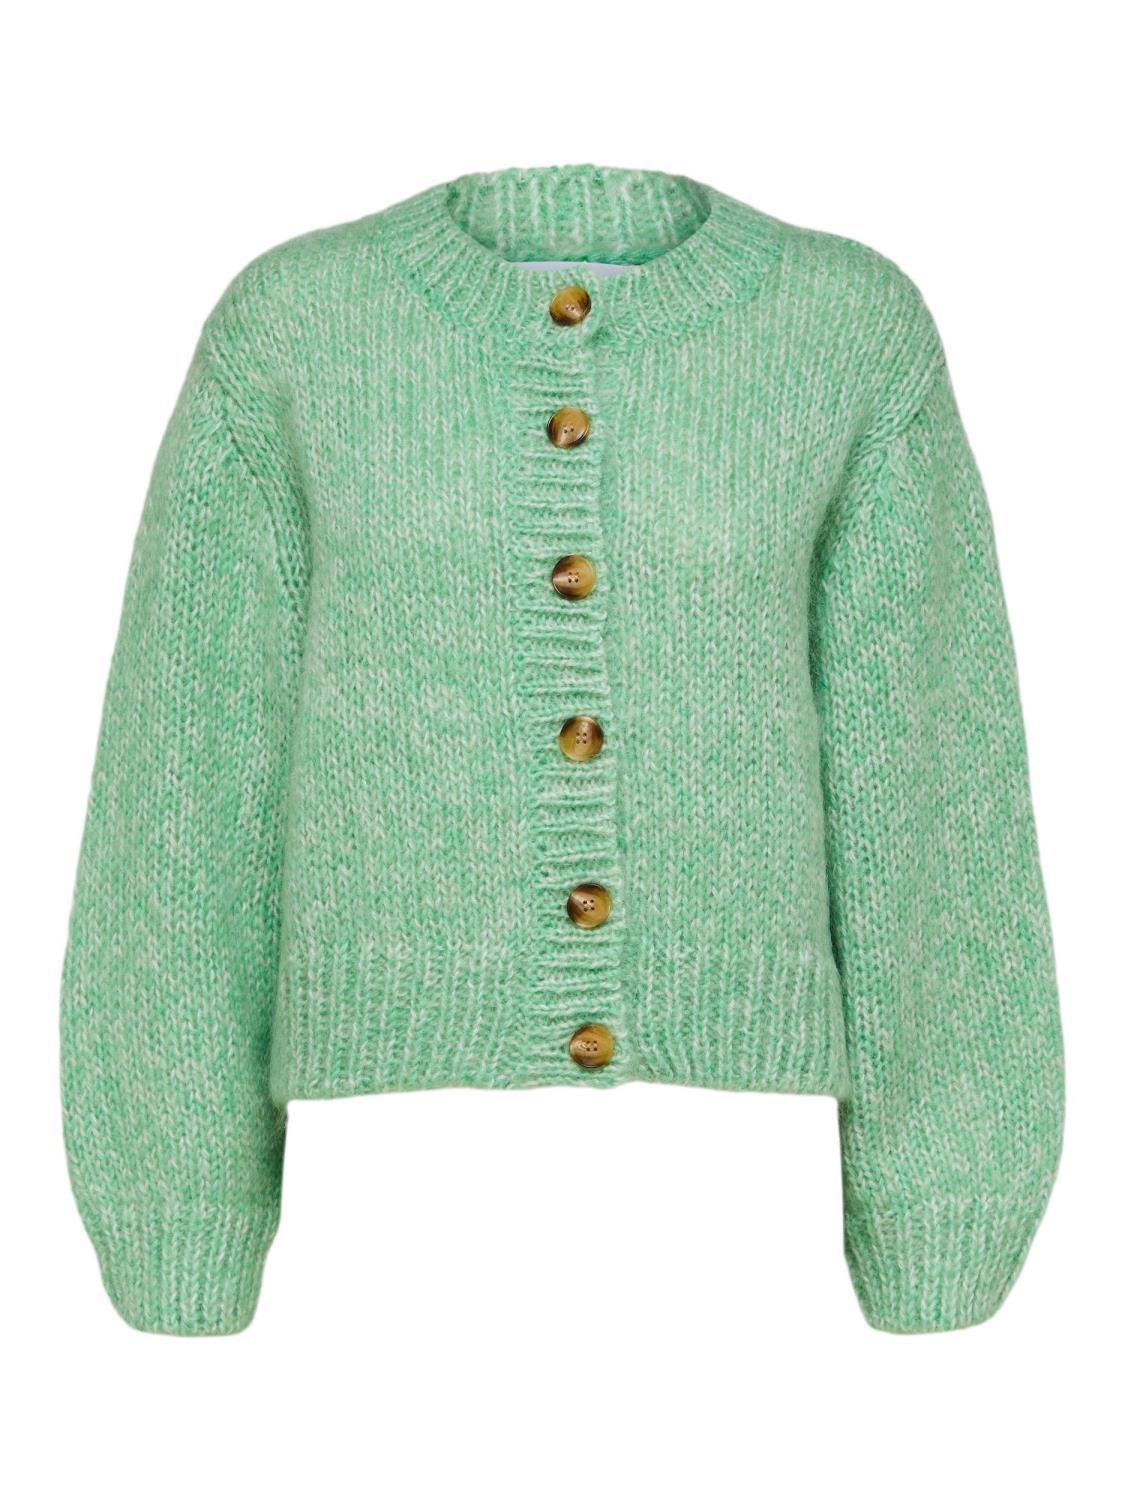 SLFSUANNE new ls knit short cardigan Green